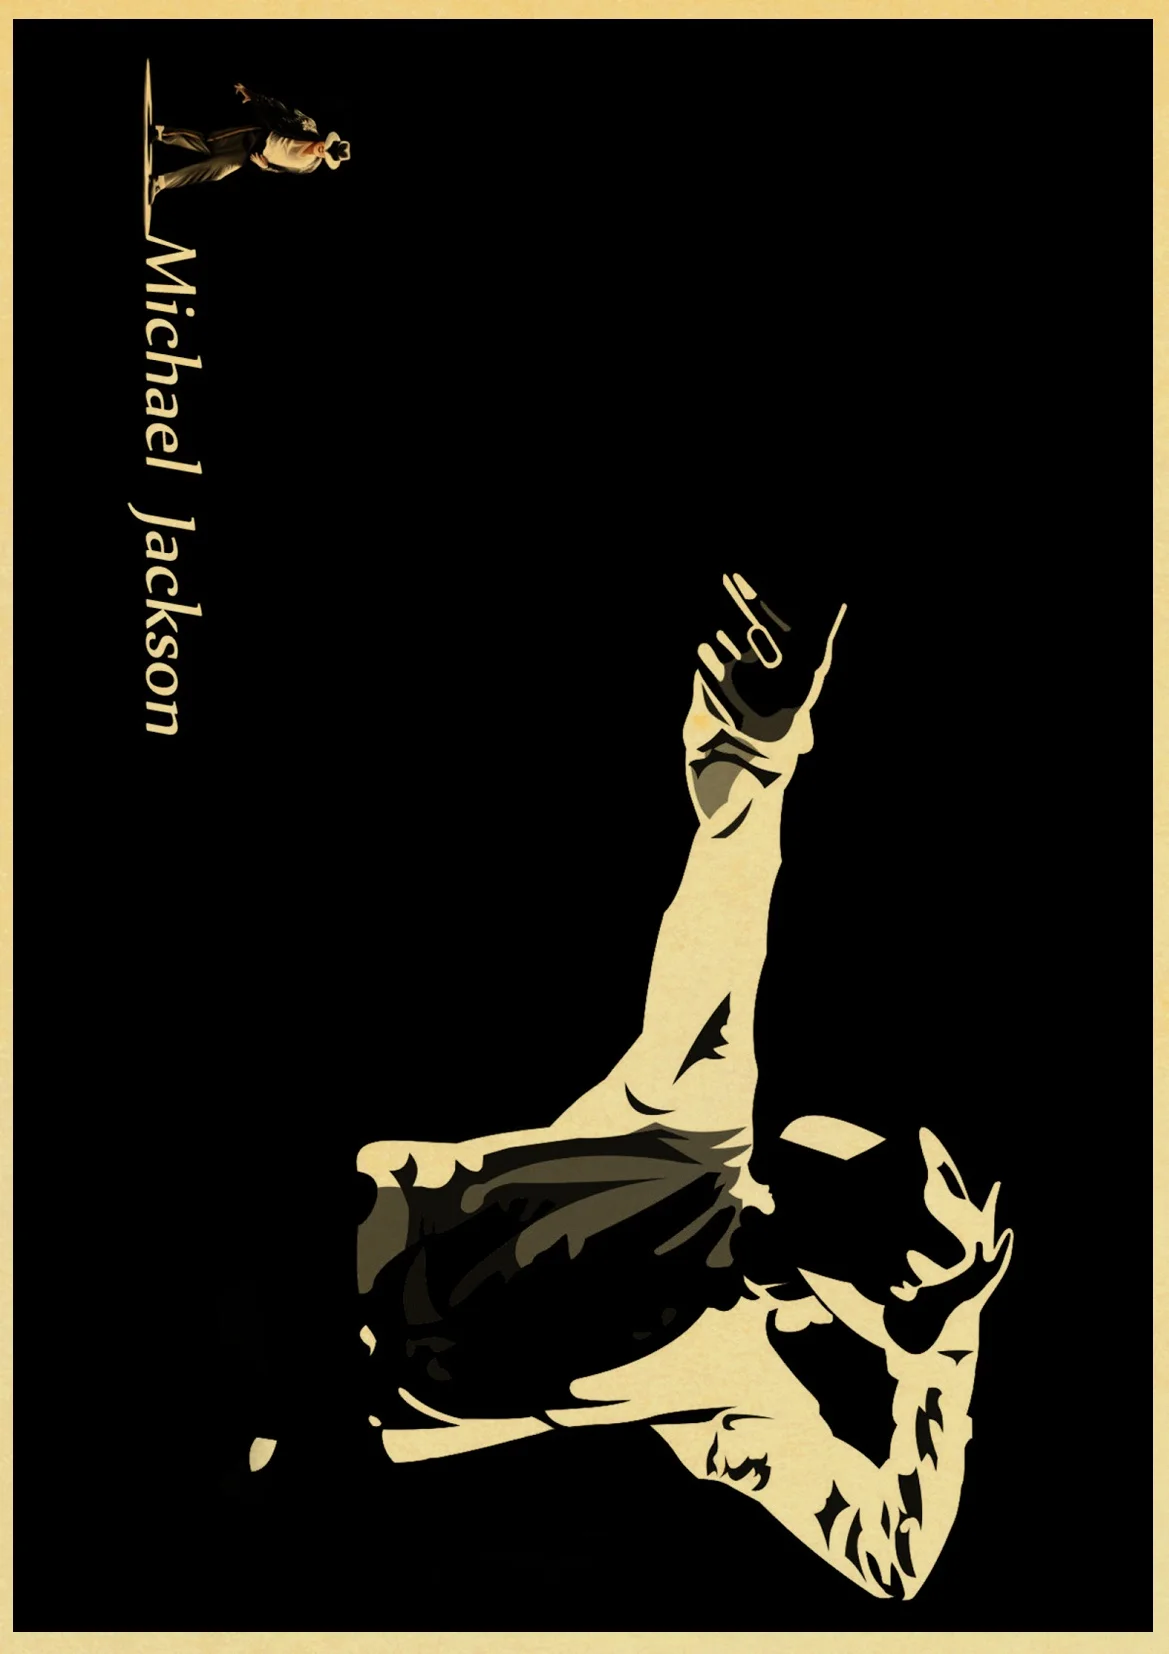 Классический певец и танцор Майкл Джексон художественная Живопись Печать на крафтовой бумаге Ретро плакат Настенная картина украшение дома Настенный декор